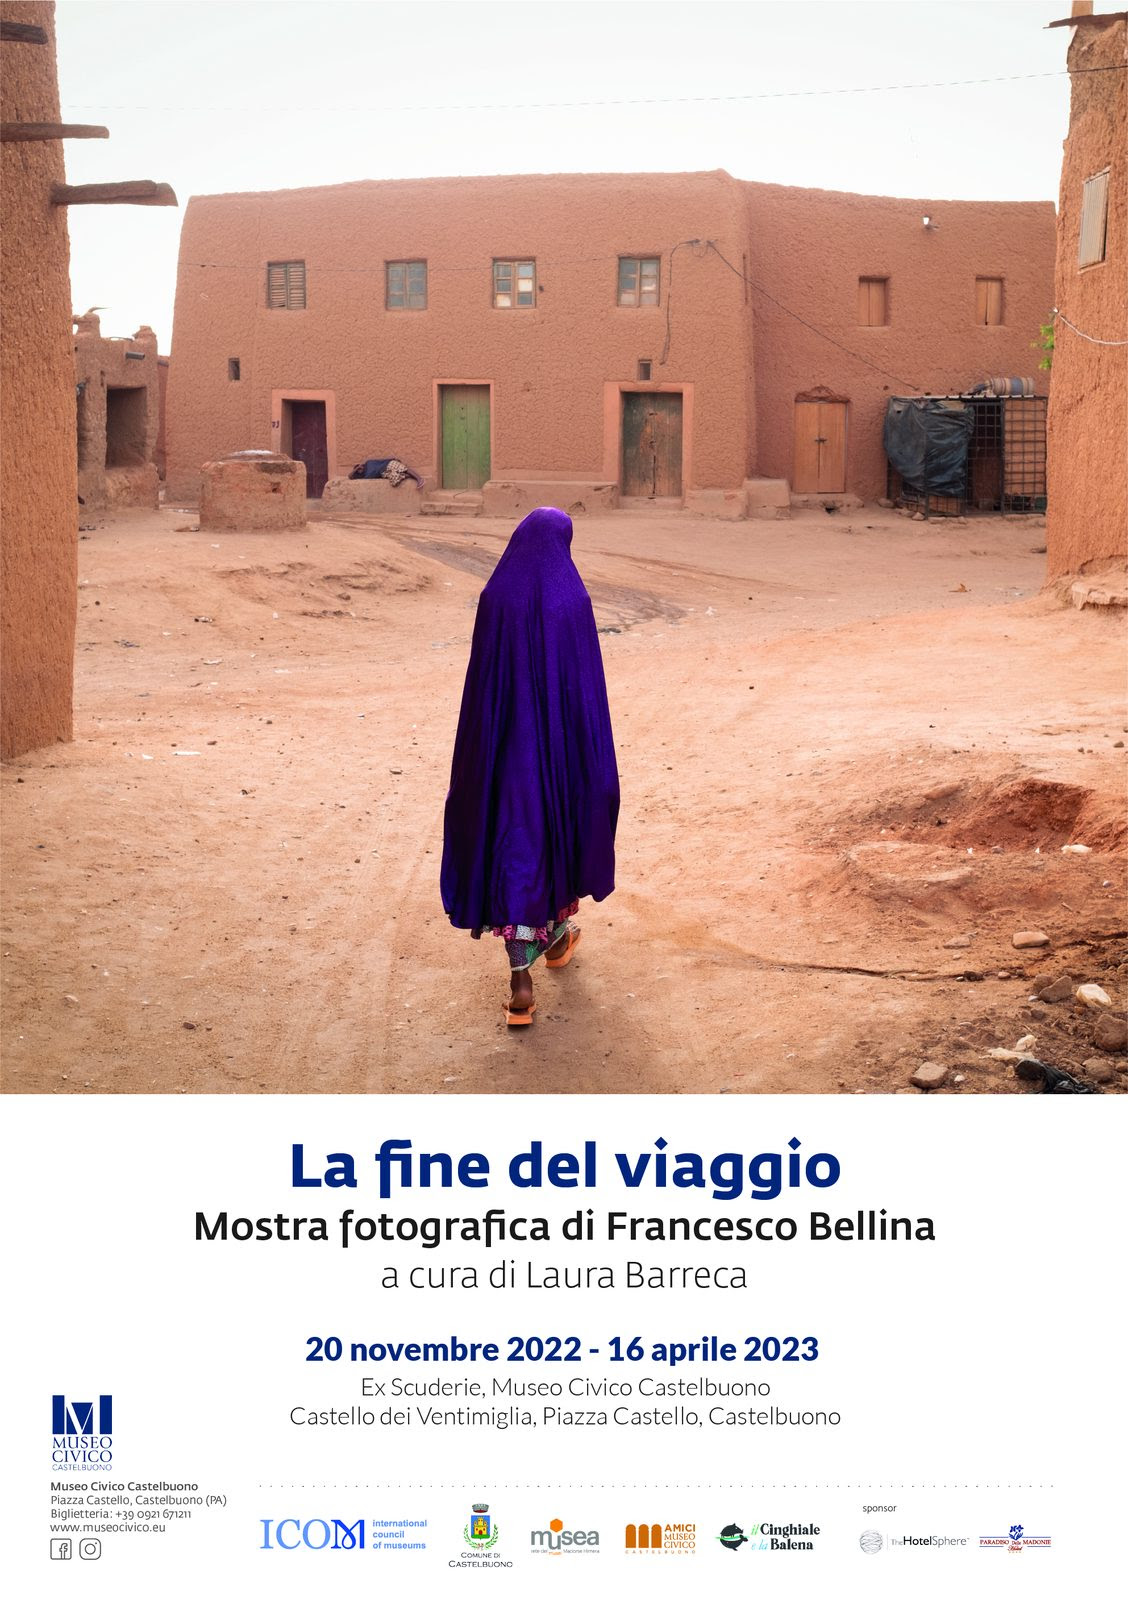 Francesco Bellina - La fine del viaggio